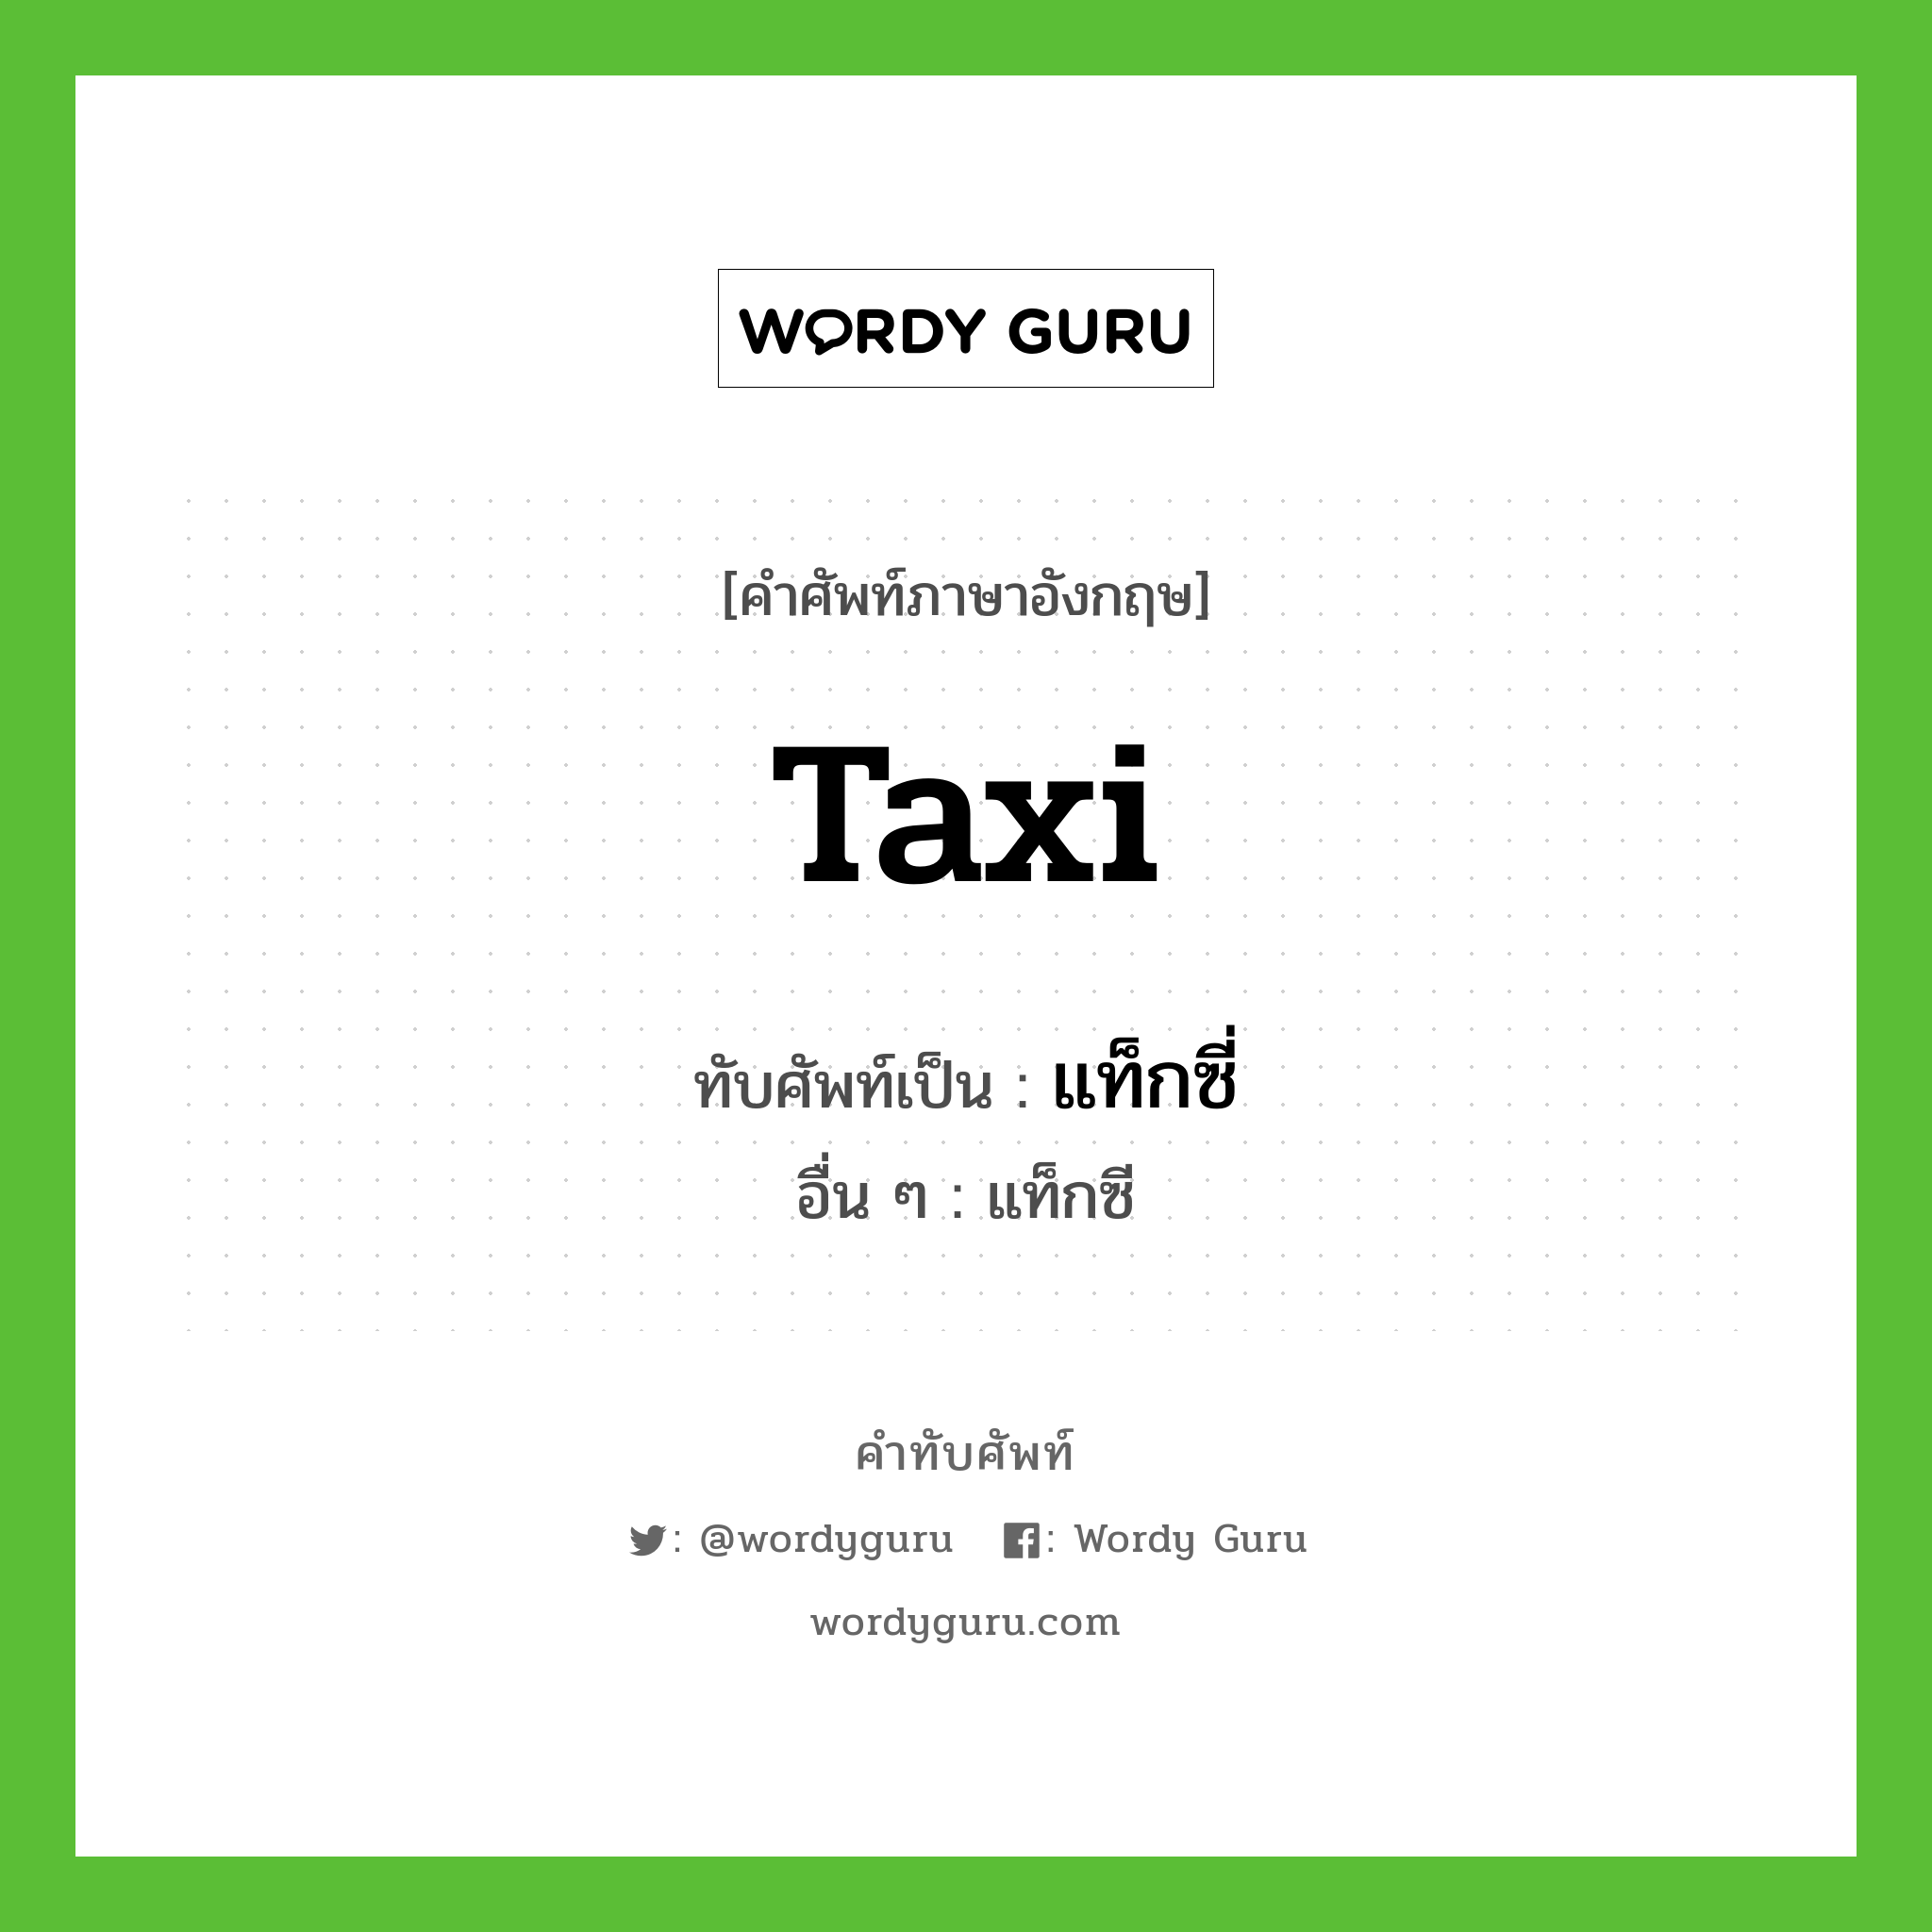 taxi เขียนเป็นคำไทยว่าอะไร?, คำศัพท์ภาษาอังกฤษ taxi ทับศัพท์เป็น แท็กซี่ อื่น ๆ แท็กซี